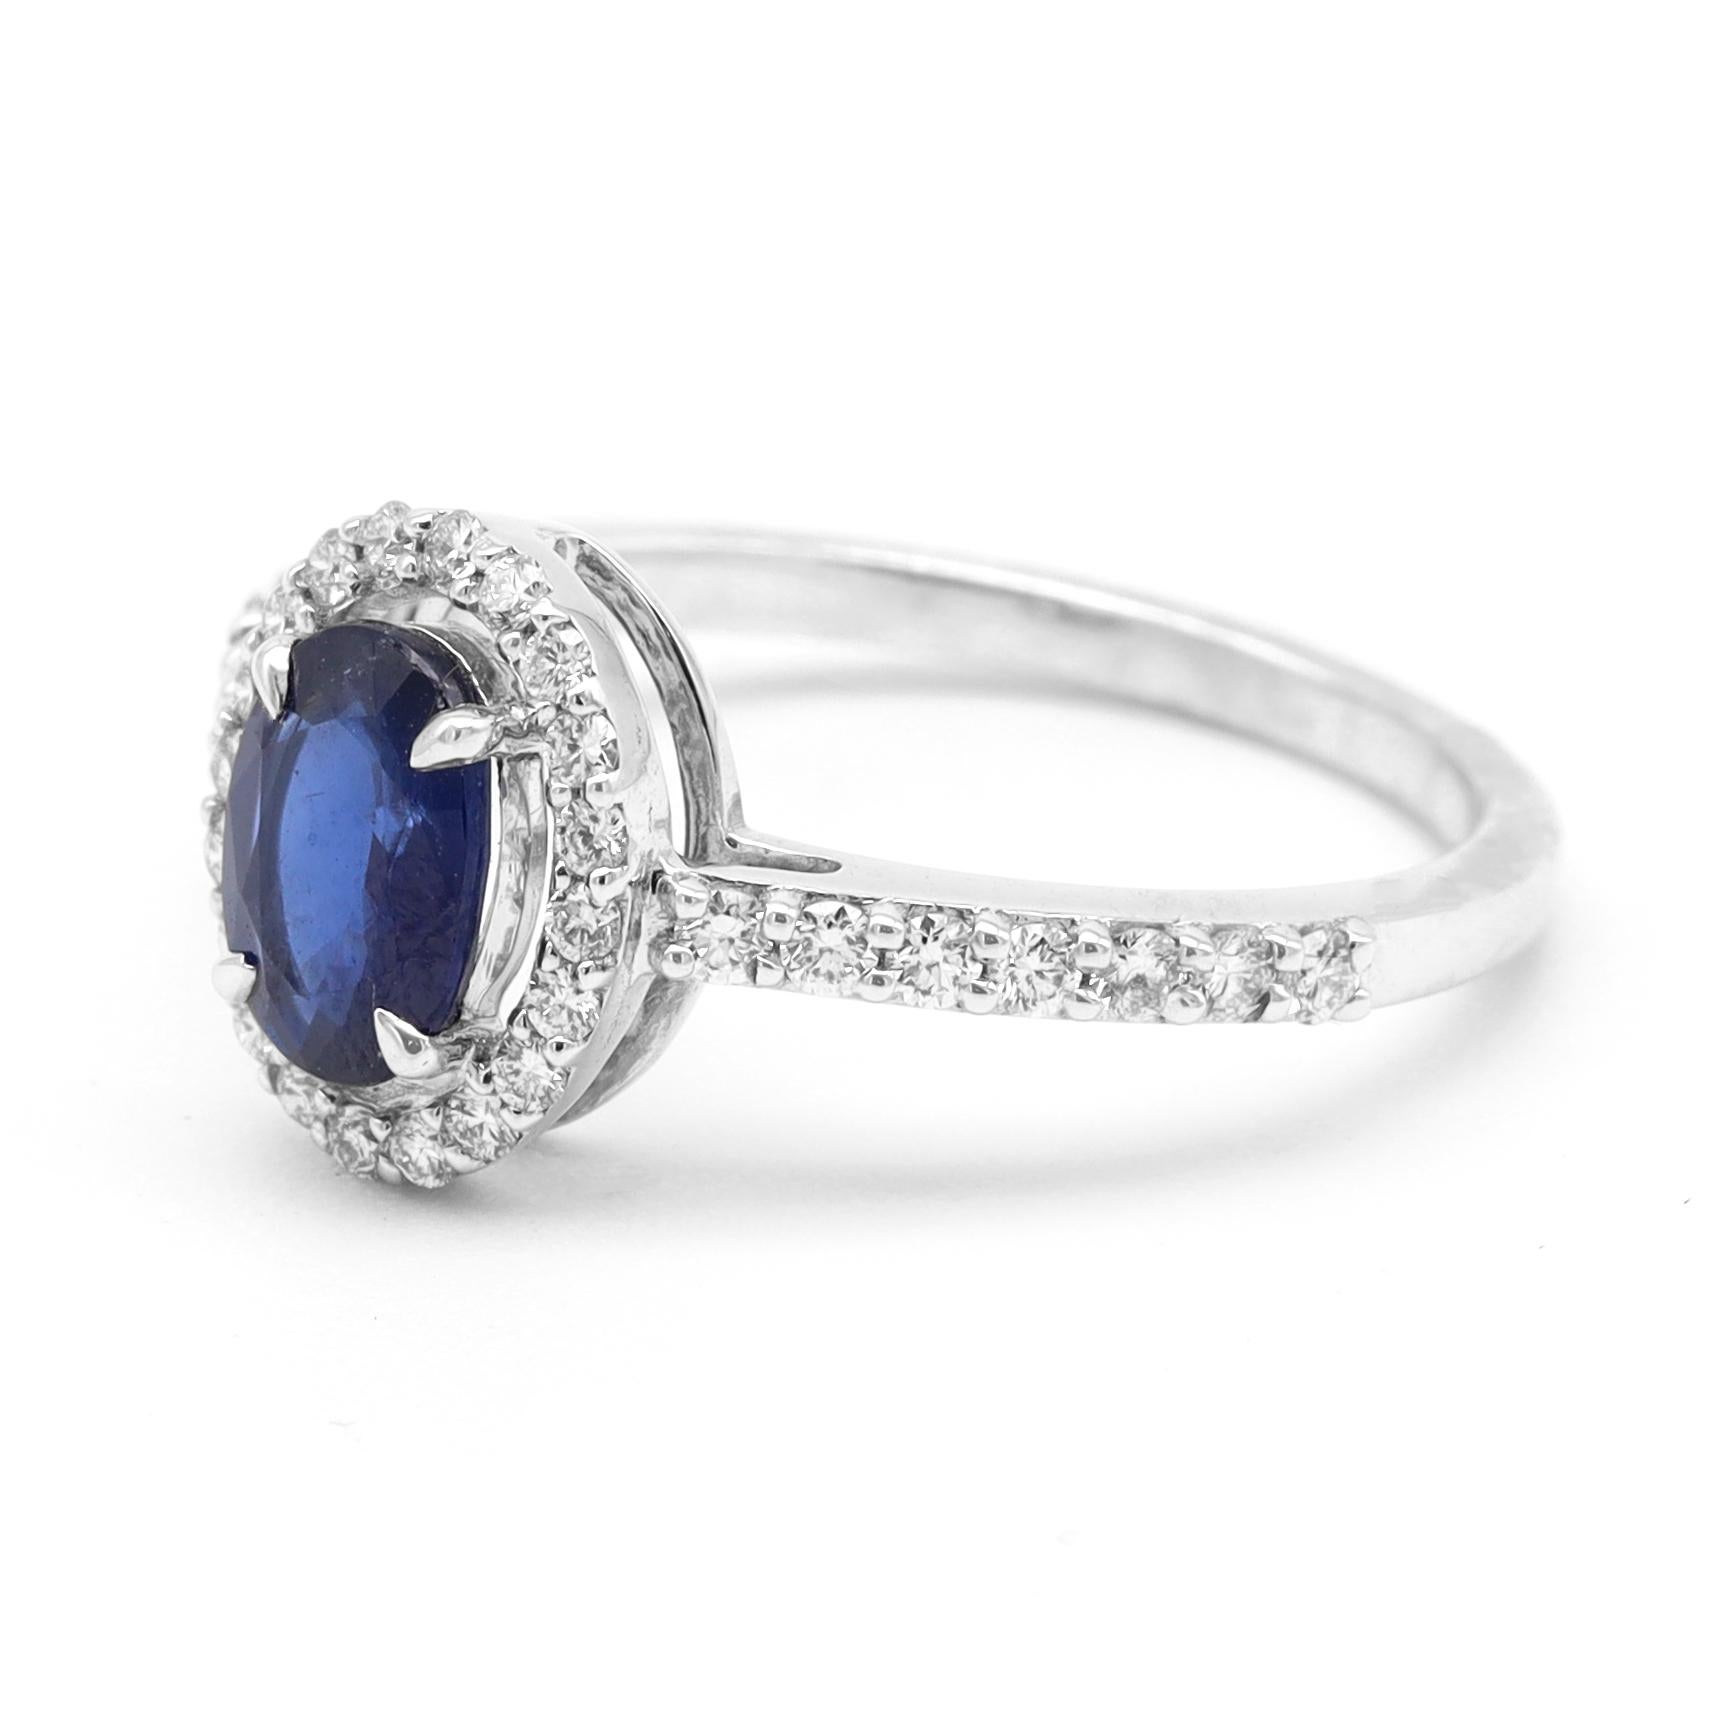 18 Karat Weißgold 1,00 Karat Blauer Saphir und Diamant Halo Cluster Ring

Dieser klassische Ring mit königsblauem Saphir und Diamanten im Halo ist ein wahres Schmuckstück. Der ovale mitternachtsblaue Saphir in Zackenfassung ist von einer